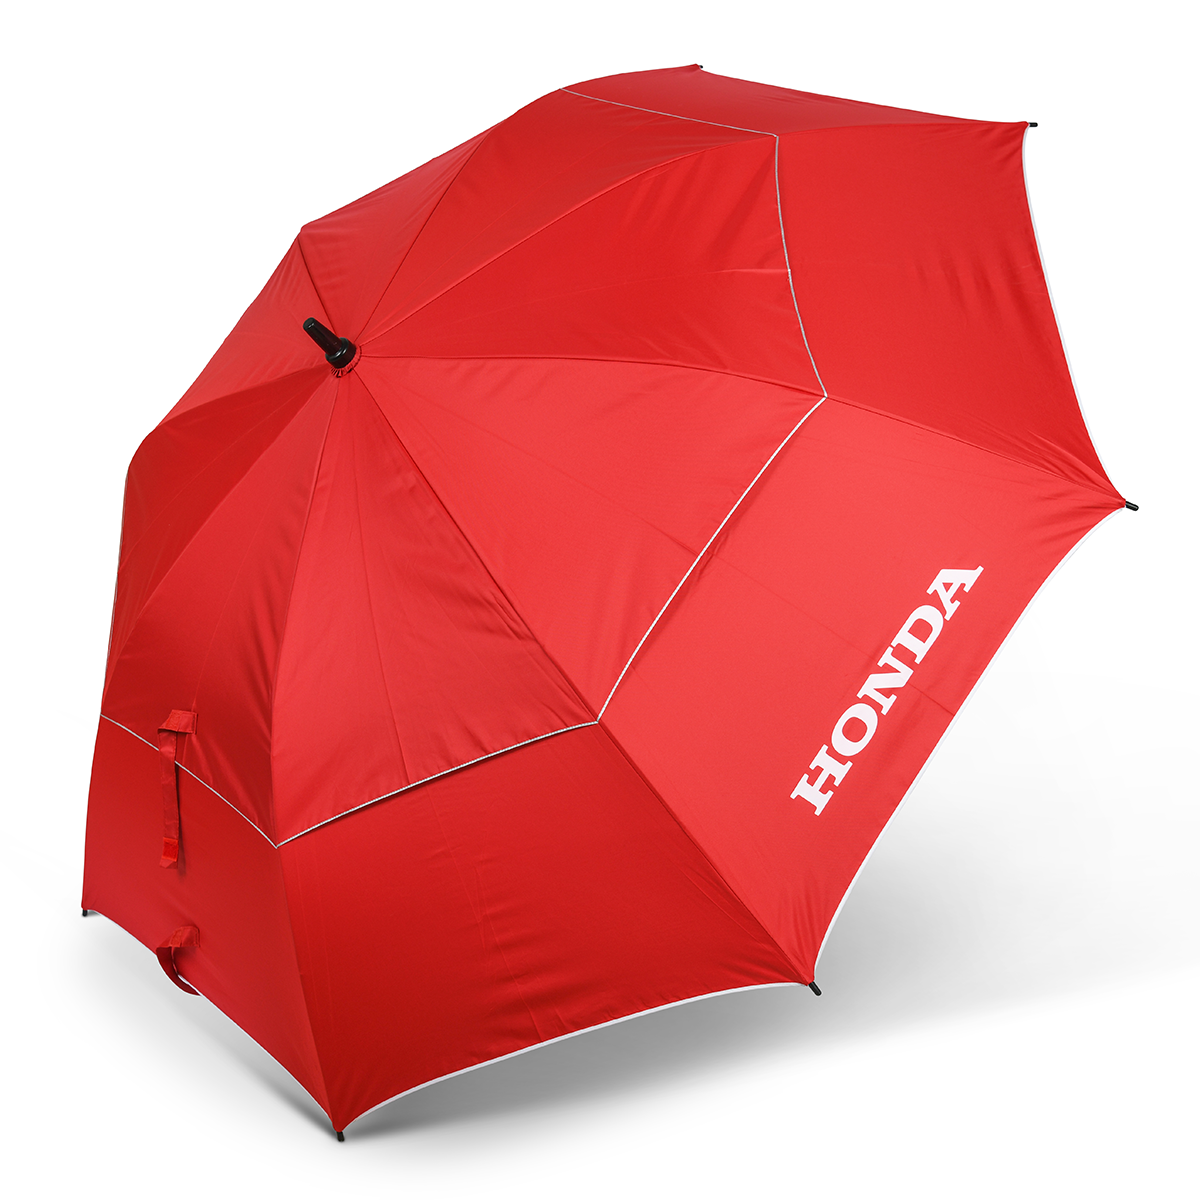 Honda Umbrella